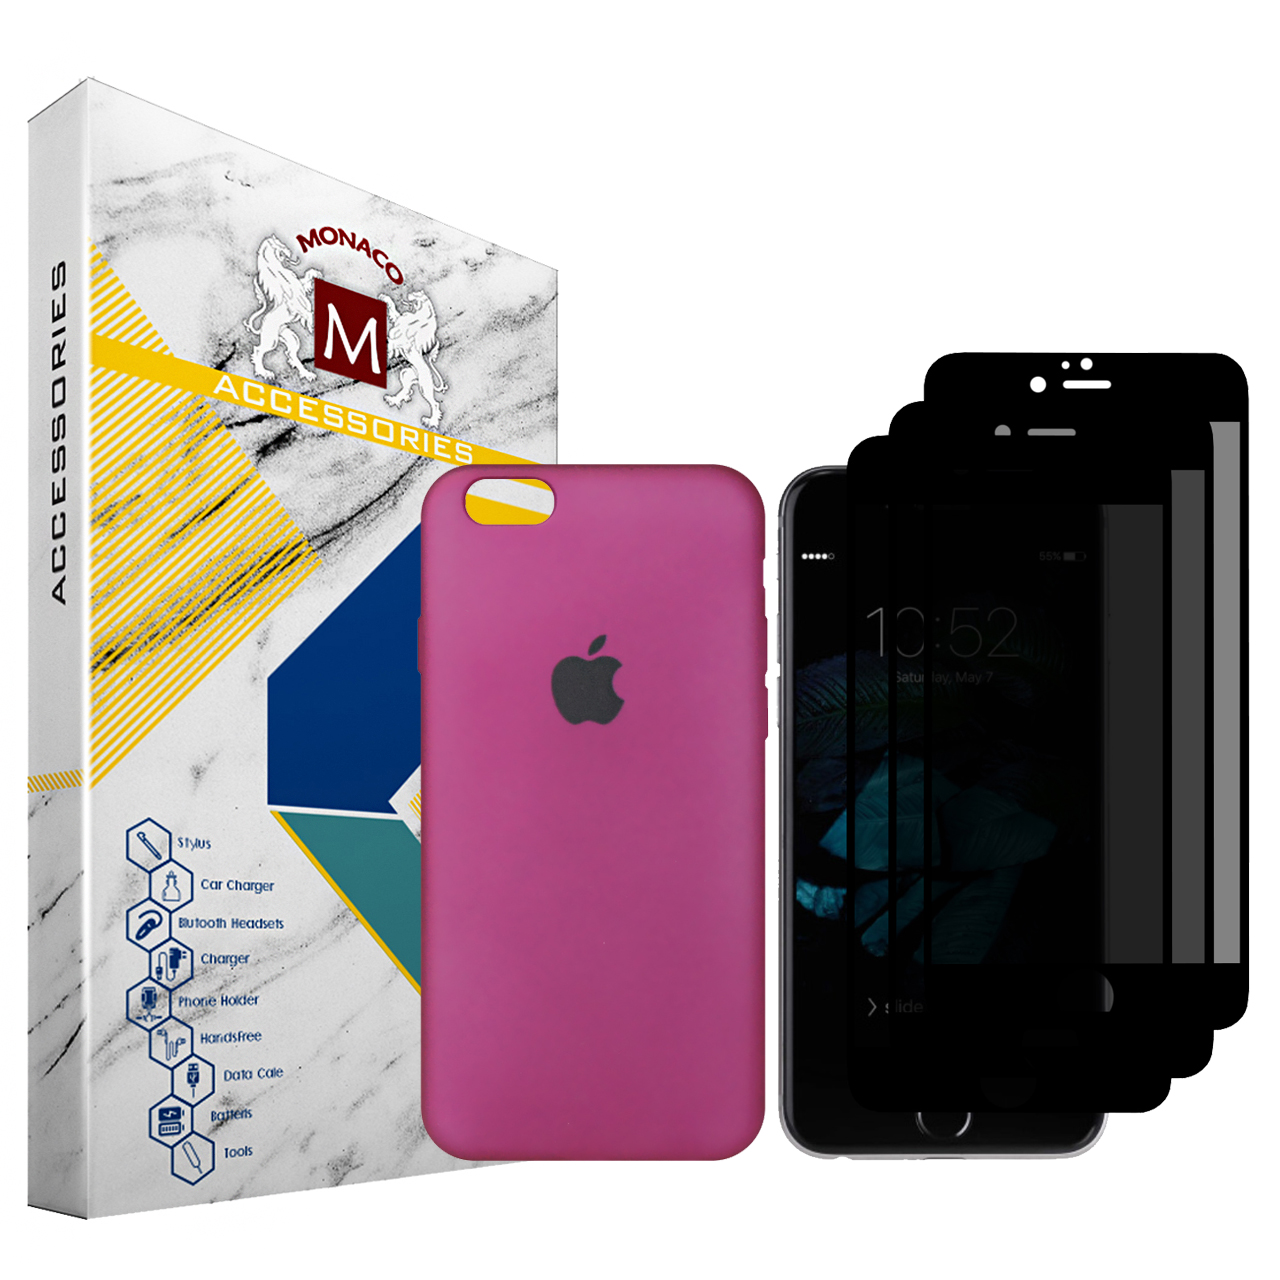 کاور موناکو مدل Si326 مناسب برای گوشی موبایل اپل iPhone 6 / 6S به همراه 3 عدد محافظ صفحه نمایش حریم شخصی